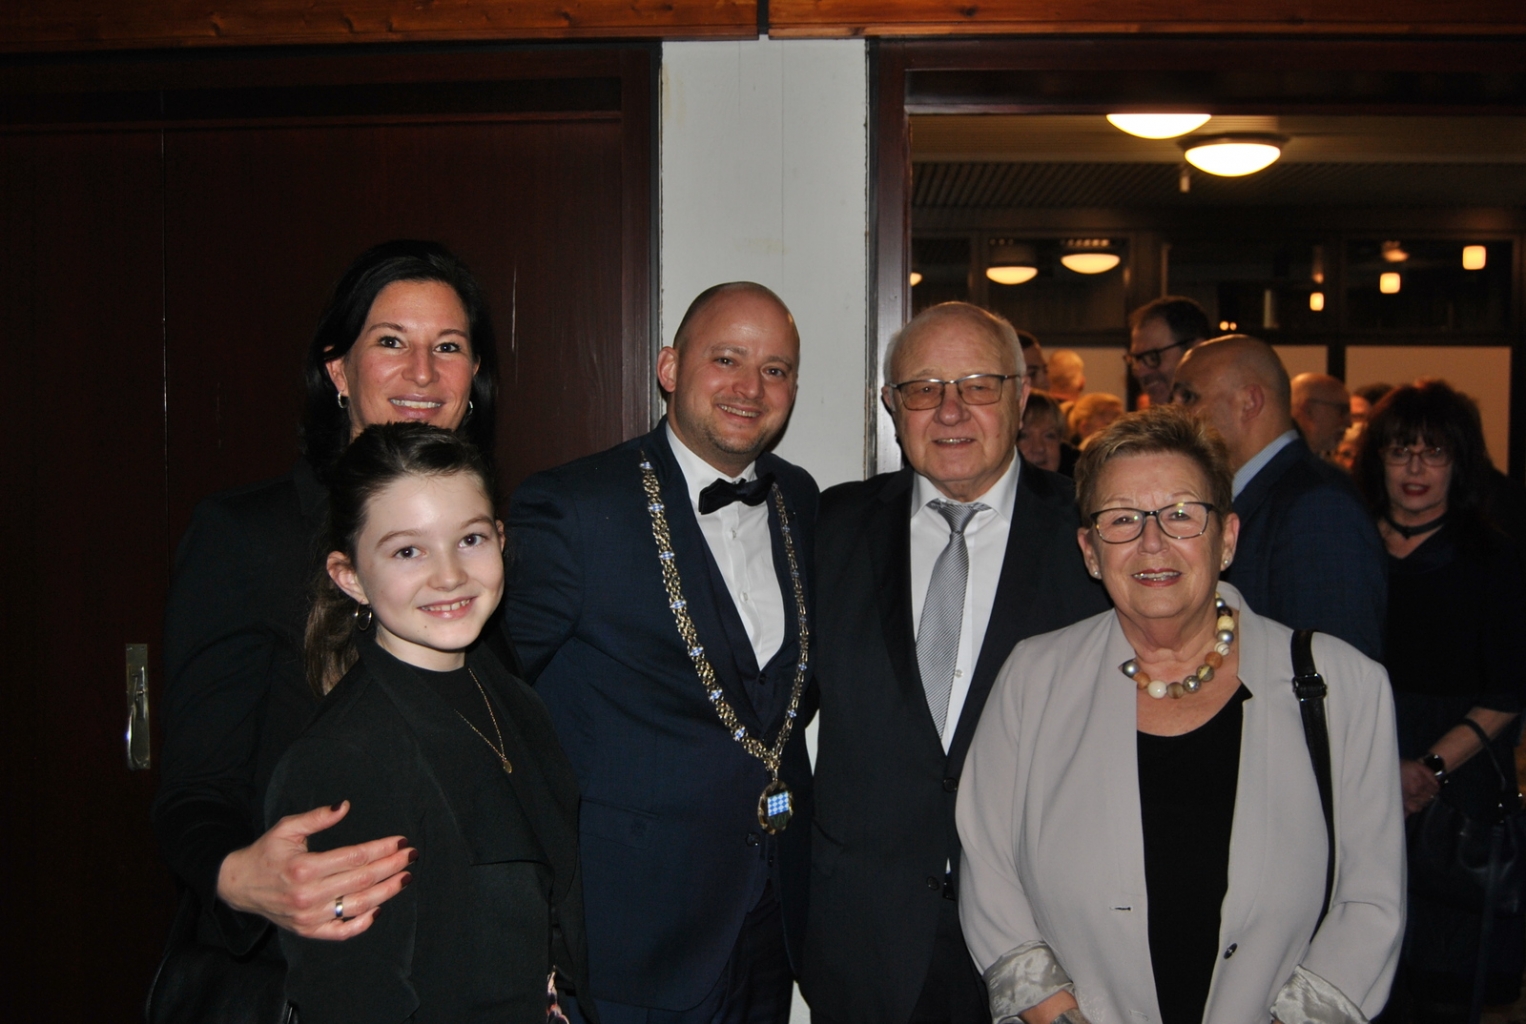 Bürgermeister Pascal Seidel mit Ehefrau Alexandra und Tochter Mia begrüßte die ankommenden Gäste persönlich. Hier Bürgermeister a.D. Helmut Baust mit Ehefrau Marianne.